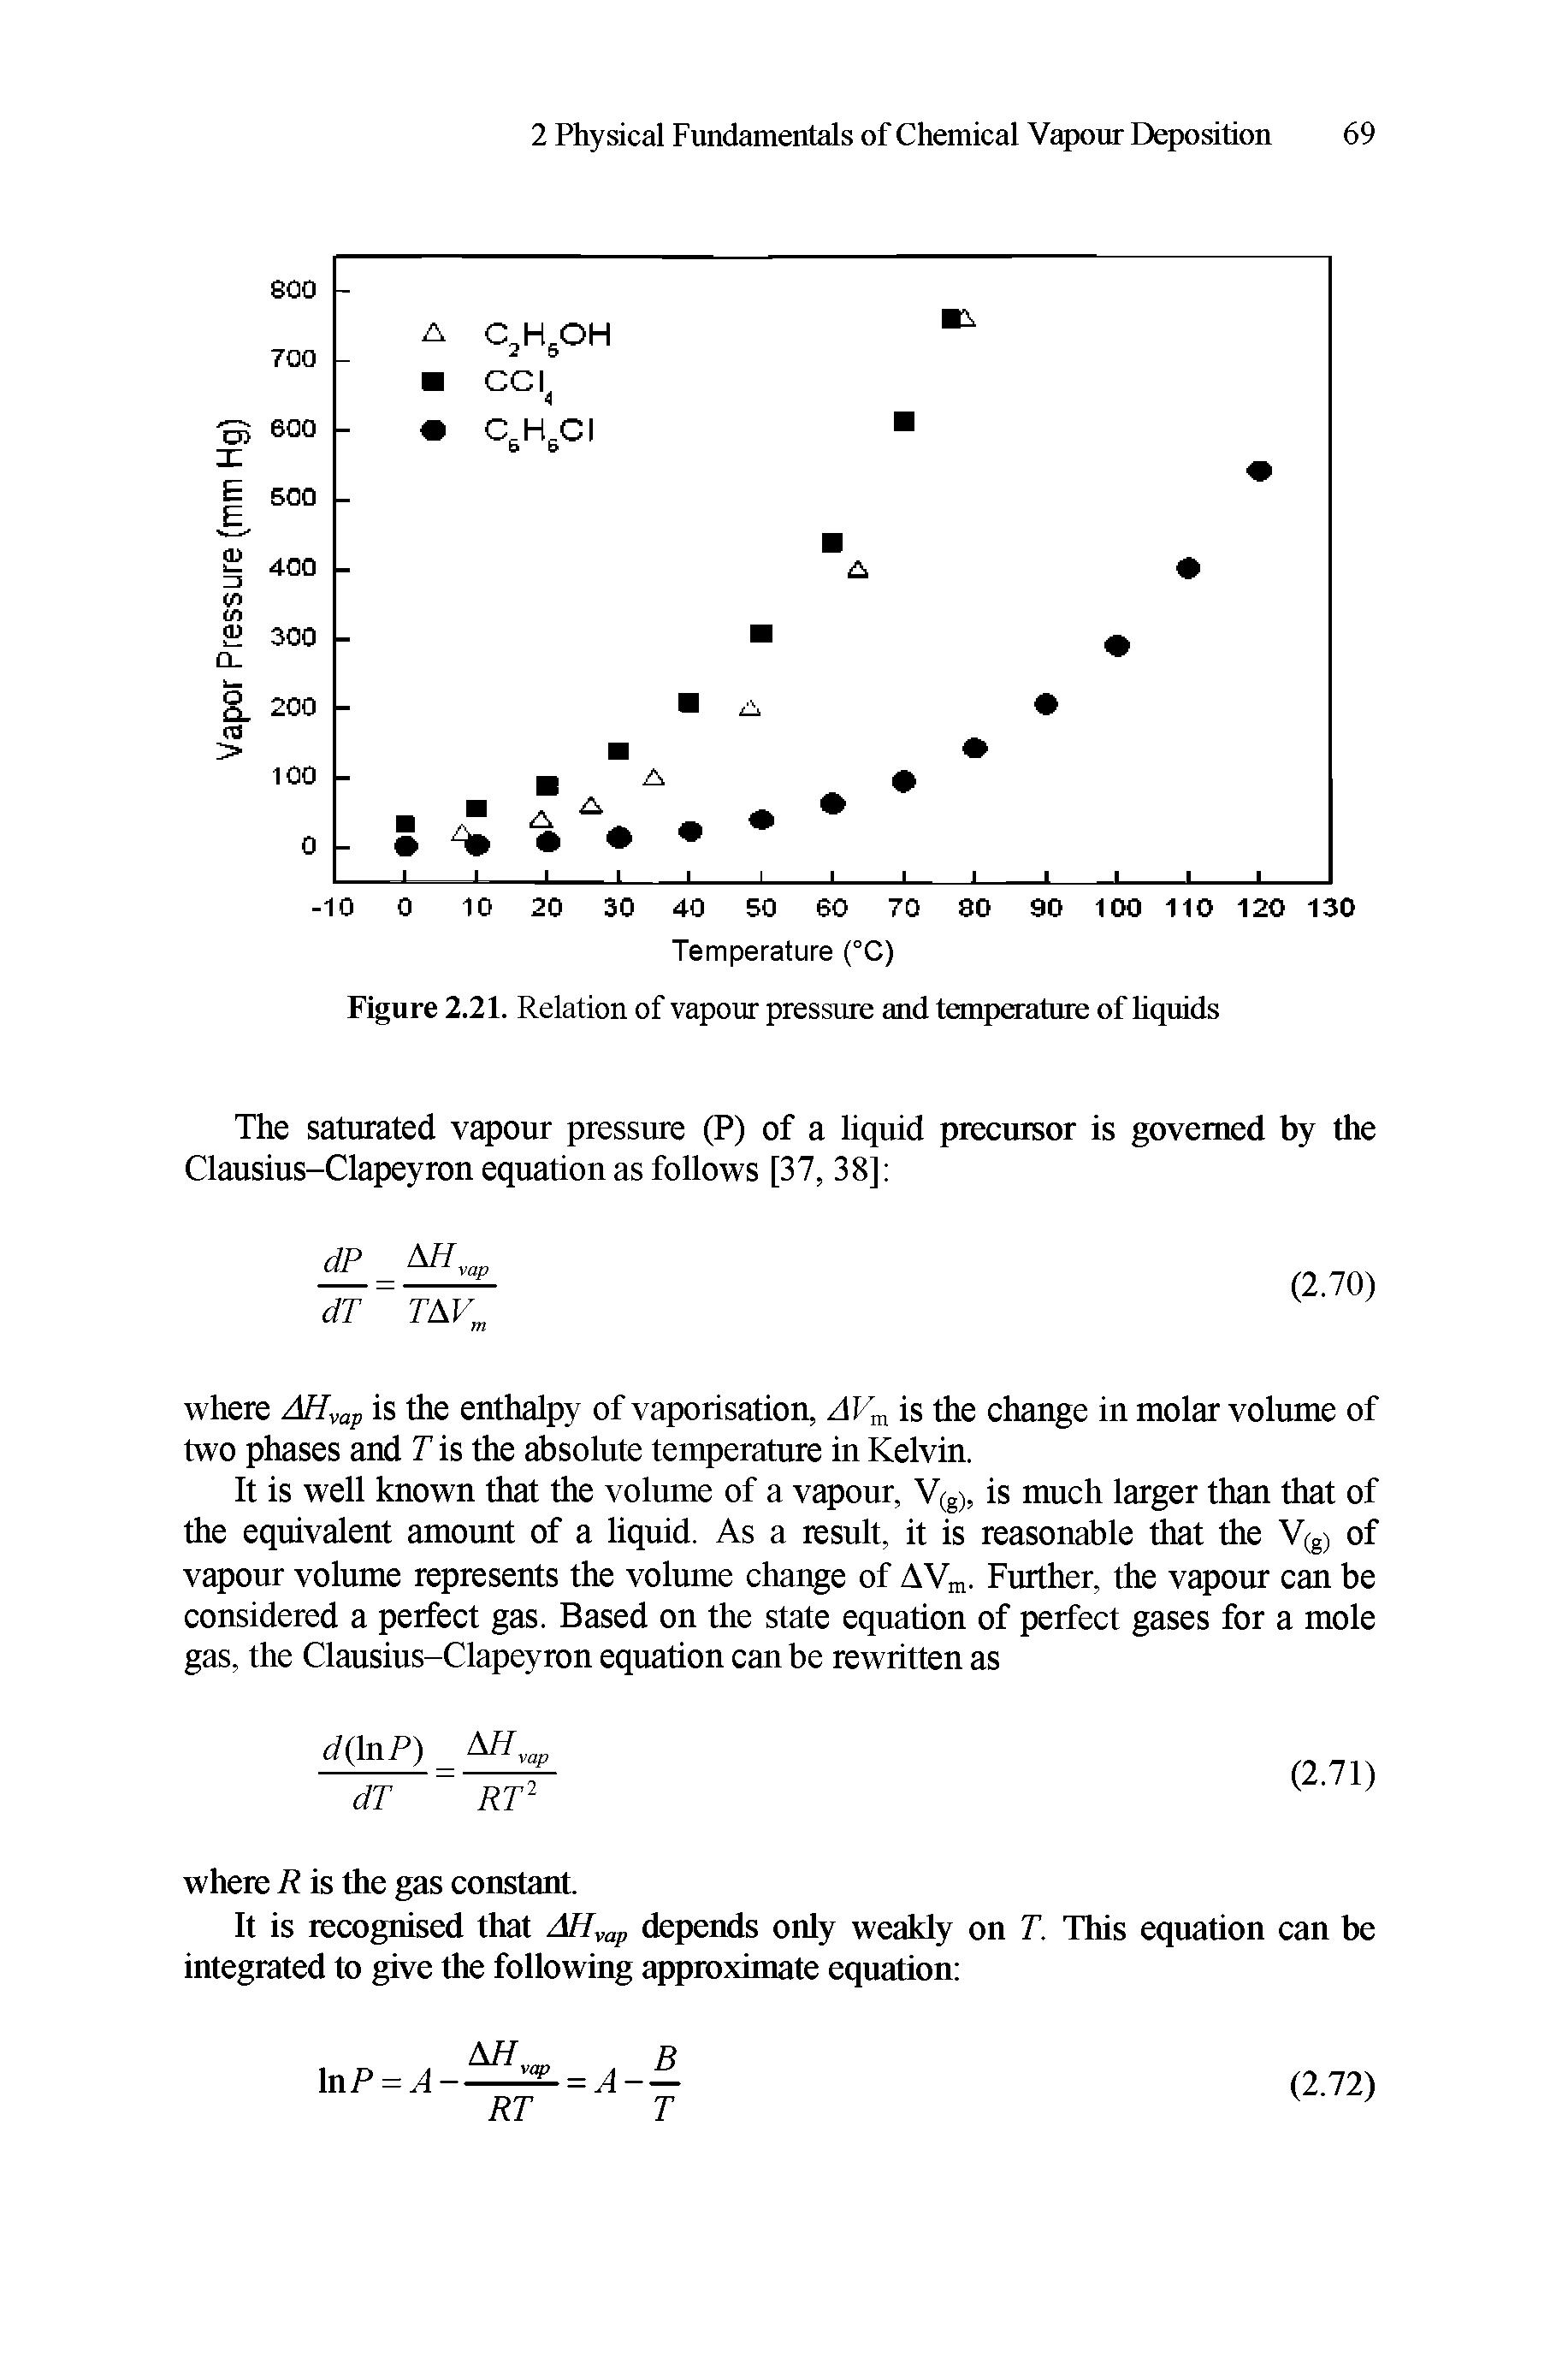 Figure 2.21. Relation of vapour pressure and temperature of liquids...